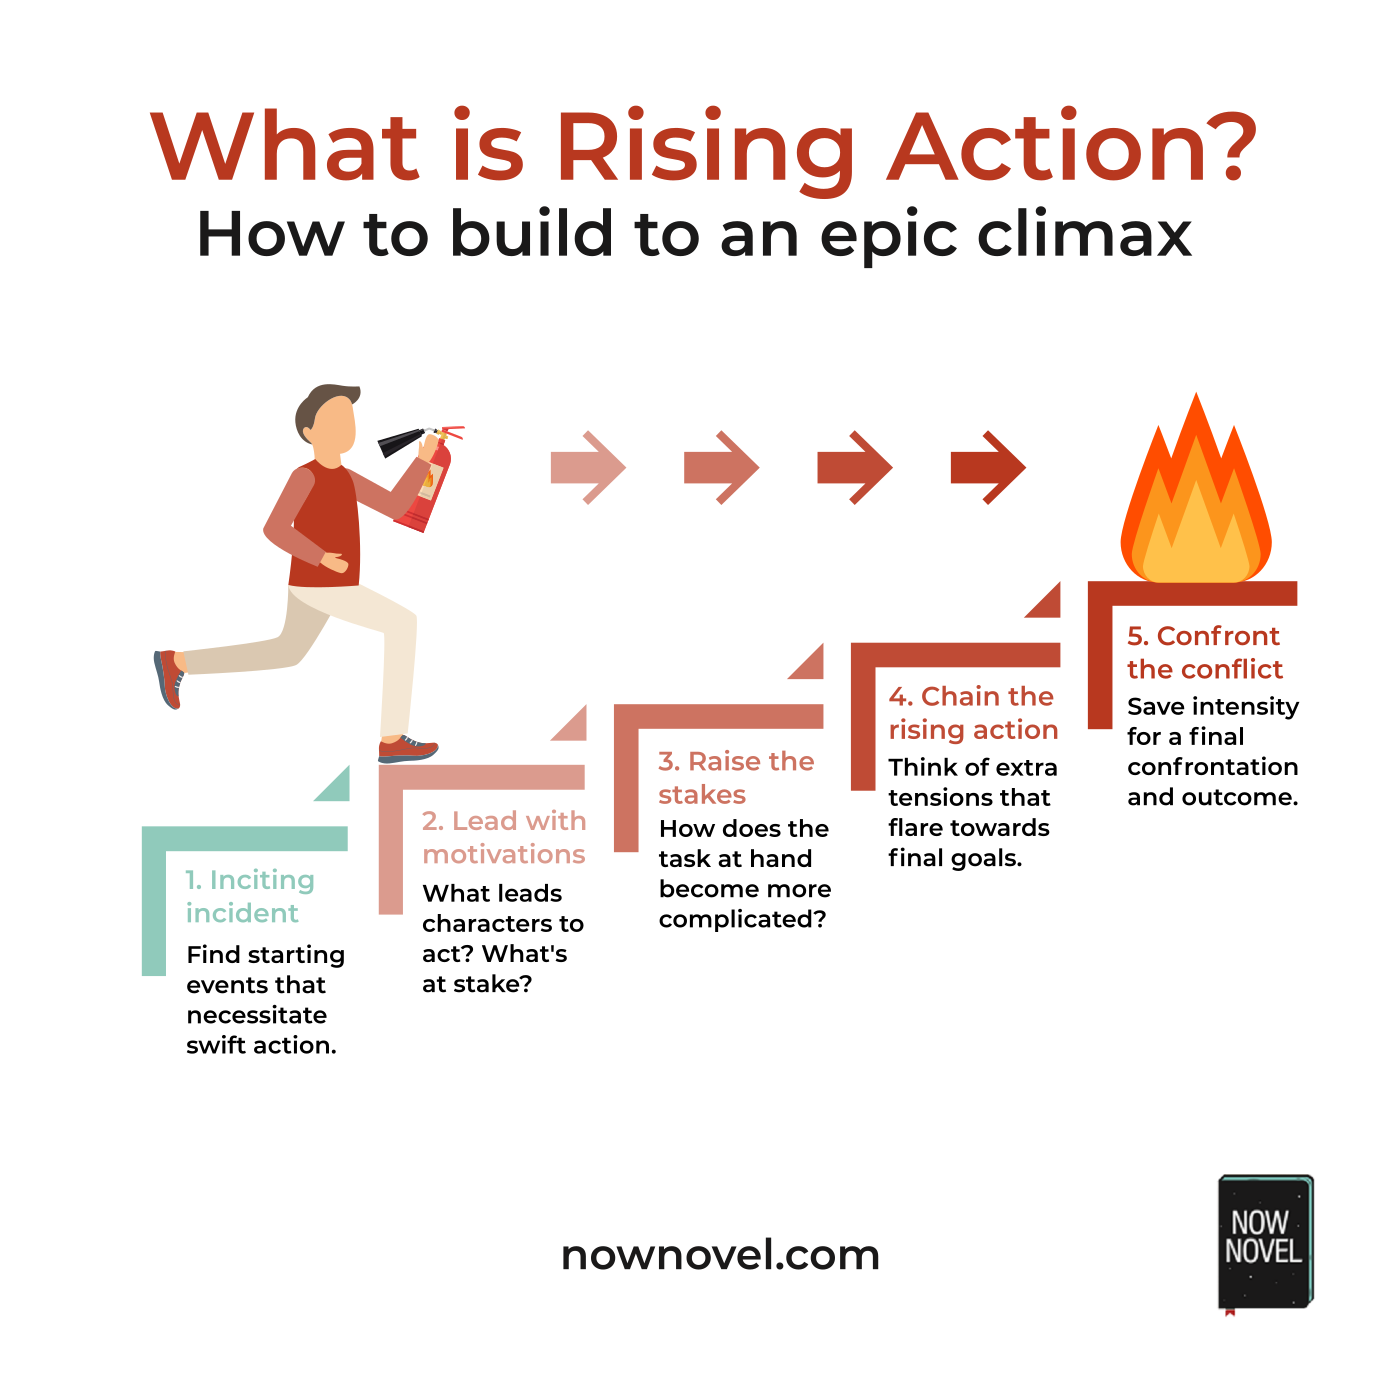 qu-es-rising-action-construyendo-para-un-cl-max-pico-mont-blanc